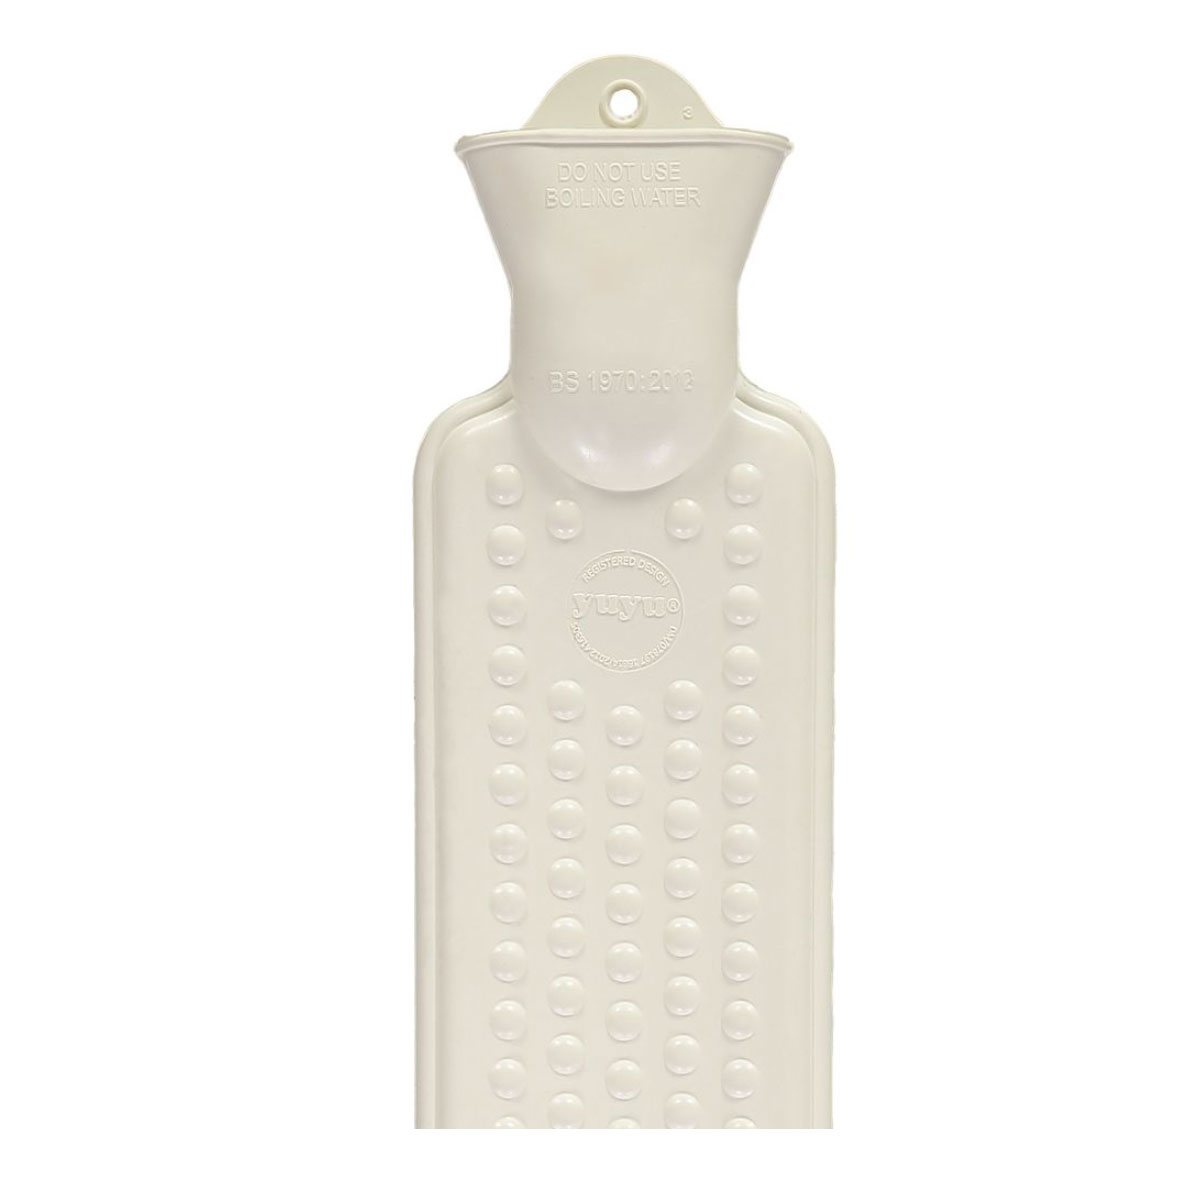 YUYU Bottle Lange Wärmflasche aus Bio-Baumwolle, Waffle, SESAM, zum umbinden  